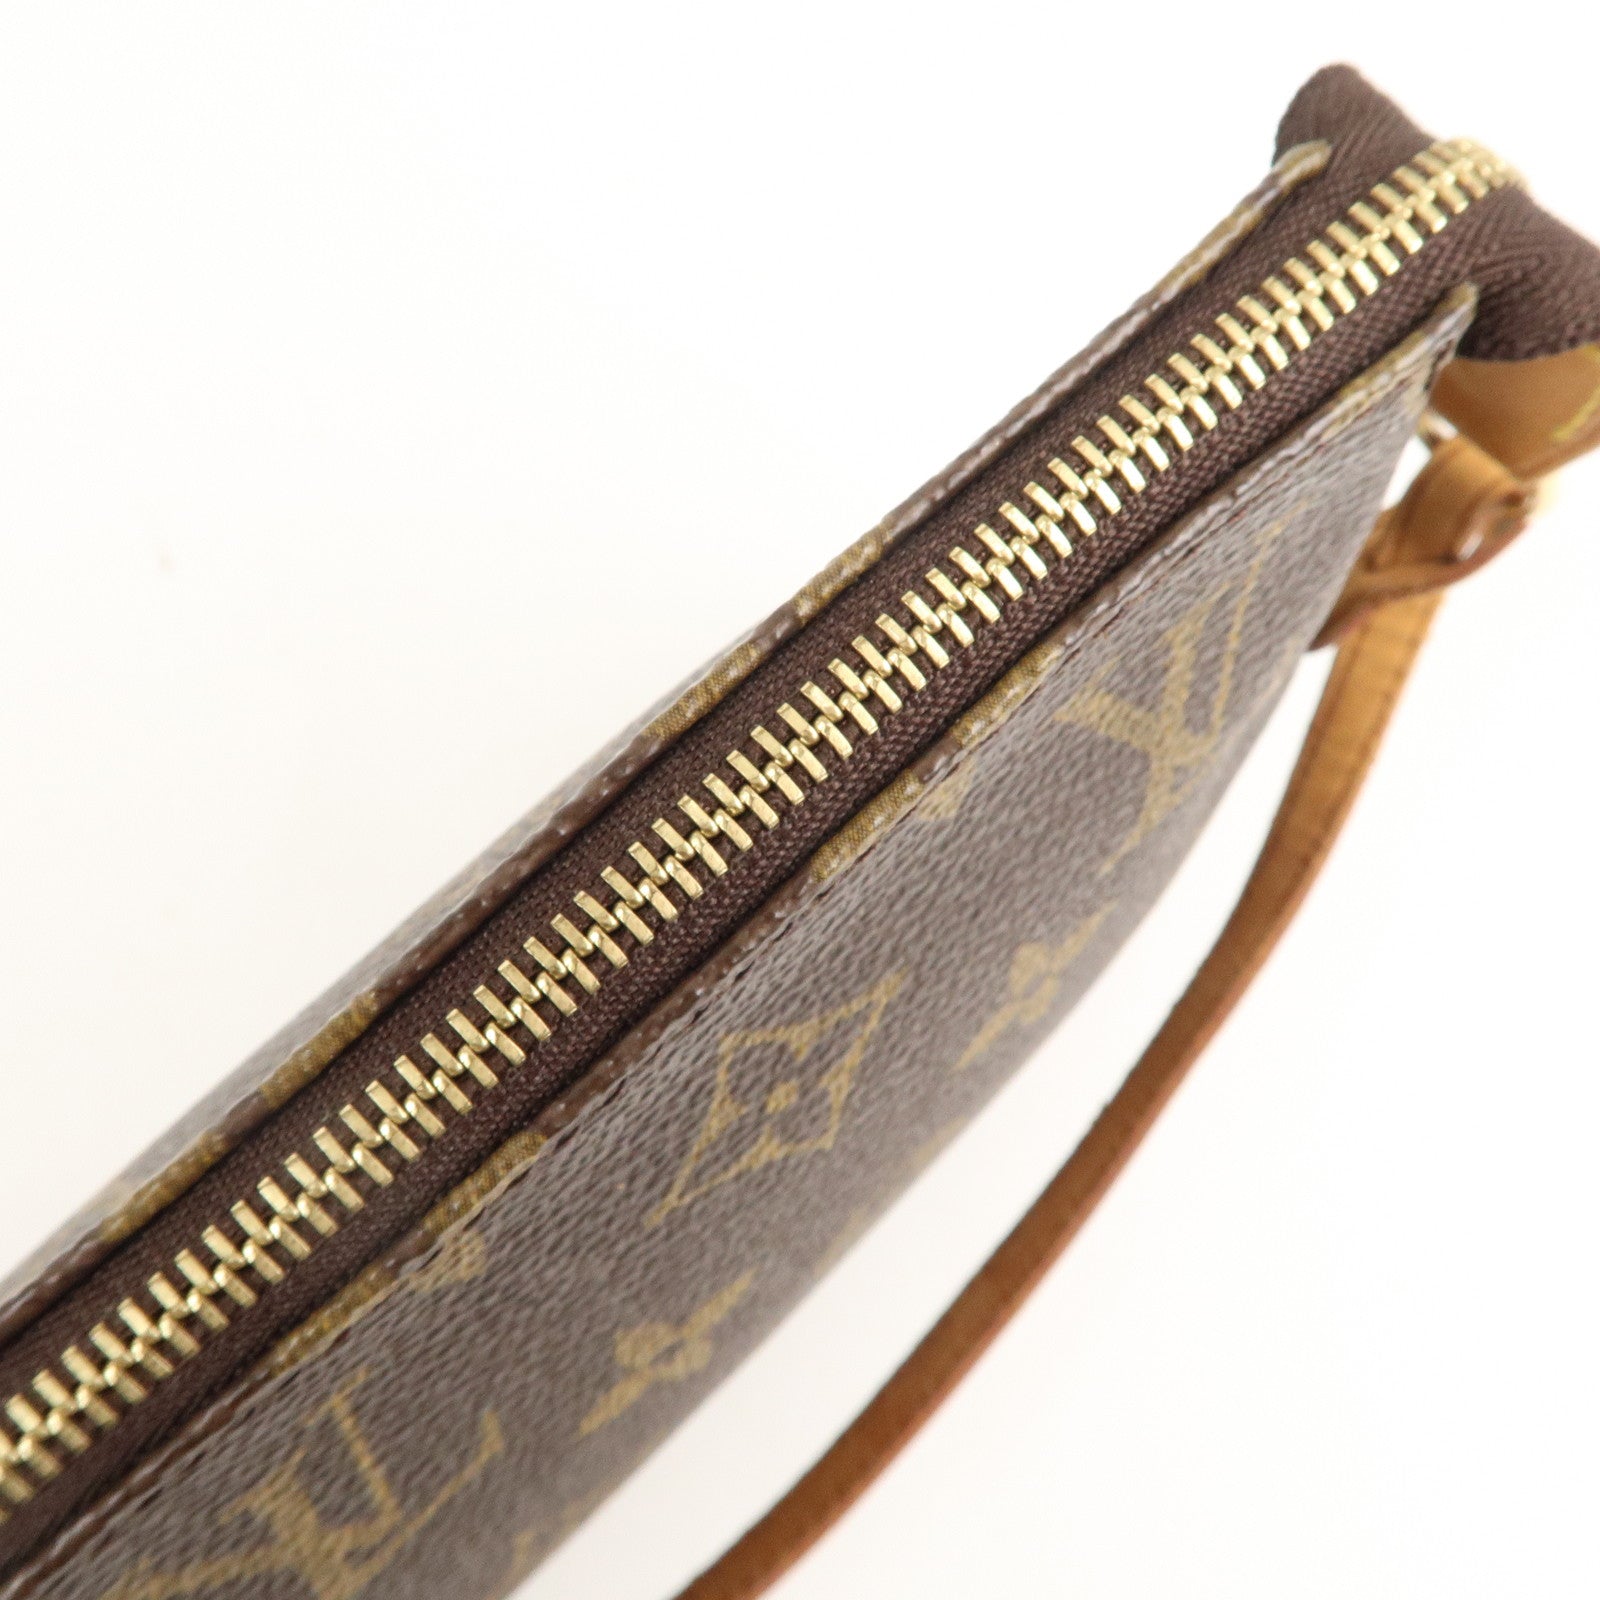 Vuitton - Bag - M51980 – dct - Accessoires - Hand - Pochette